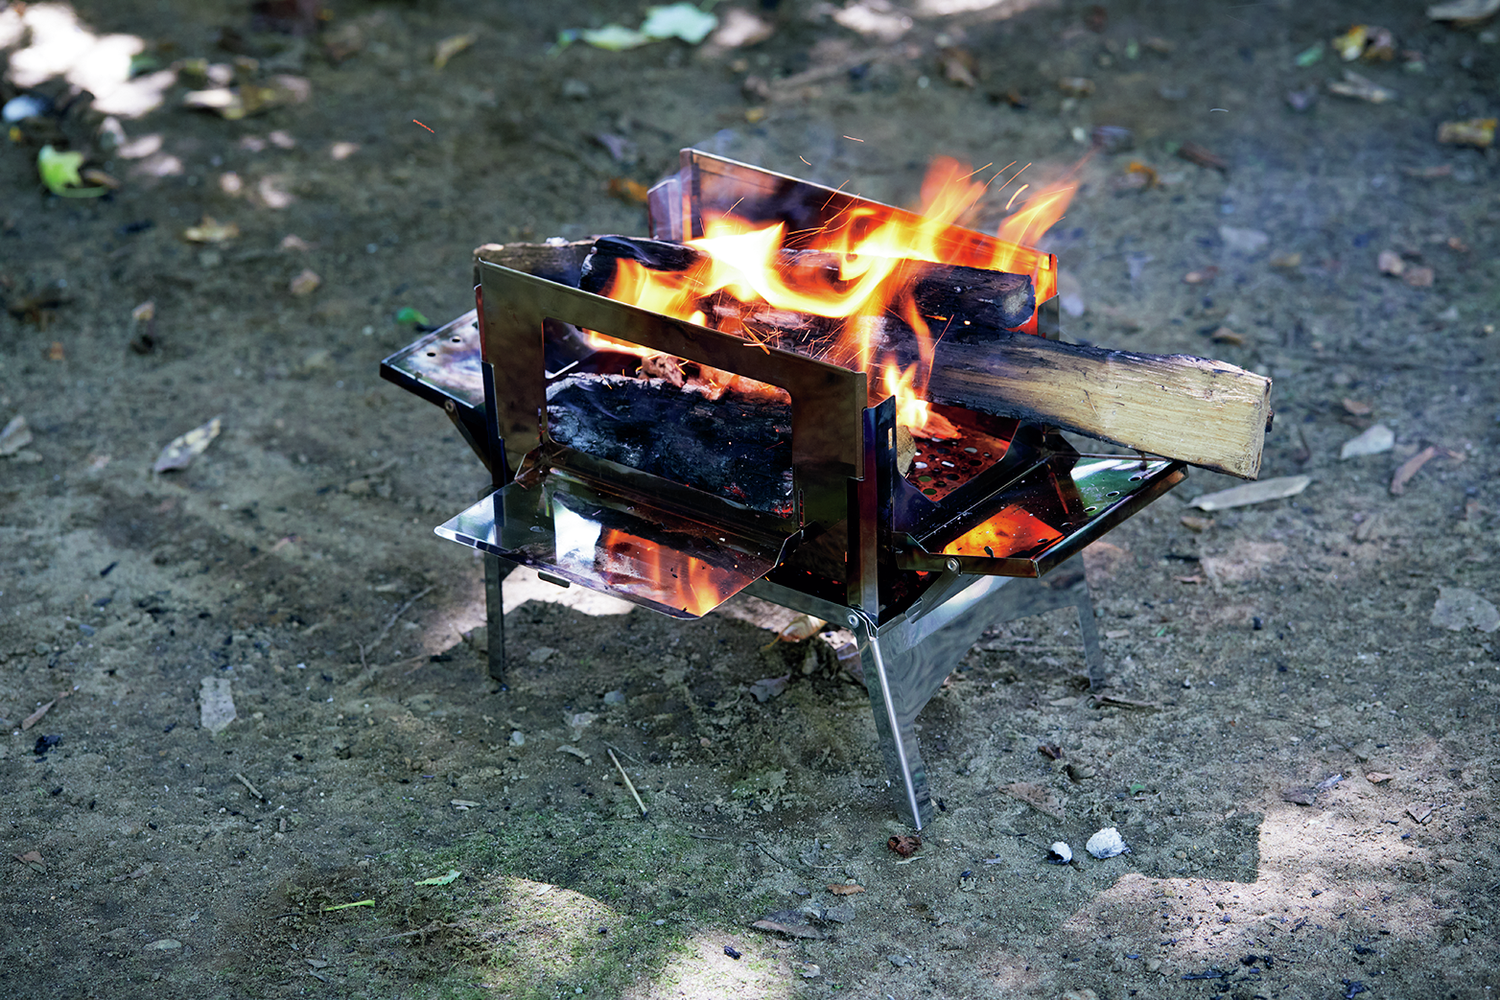 キャンプにおすすめの焚き火台８選。実際に火を着けて試してみました！【後編】 | 焚き火・火おこし道具 【BE-PAL】キャンプ 、アウトドア、自然派生活の情報源ビーパル